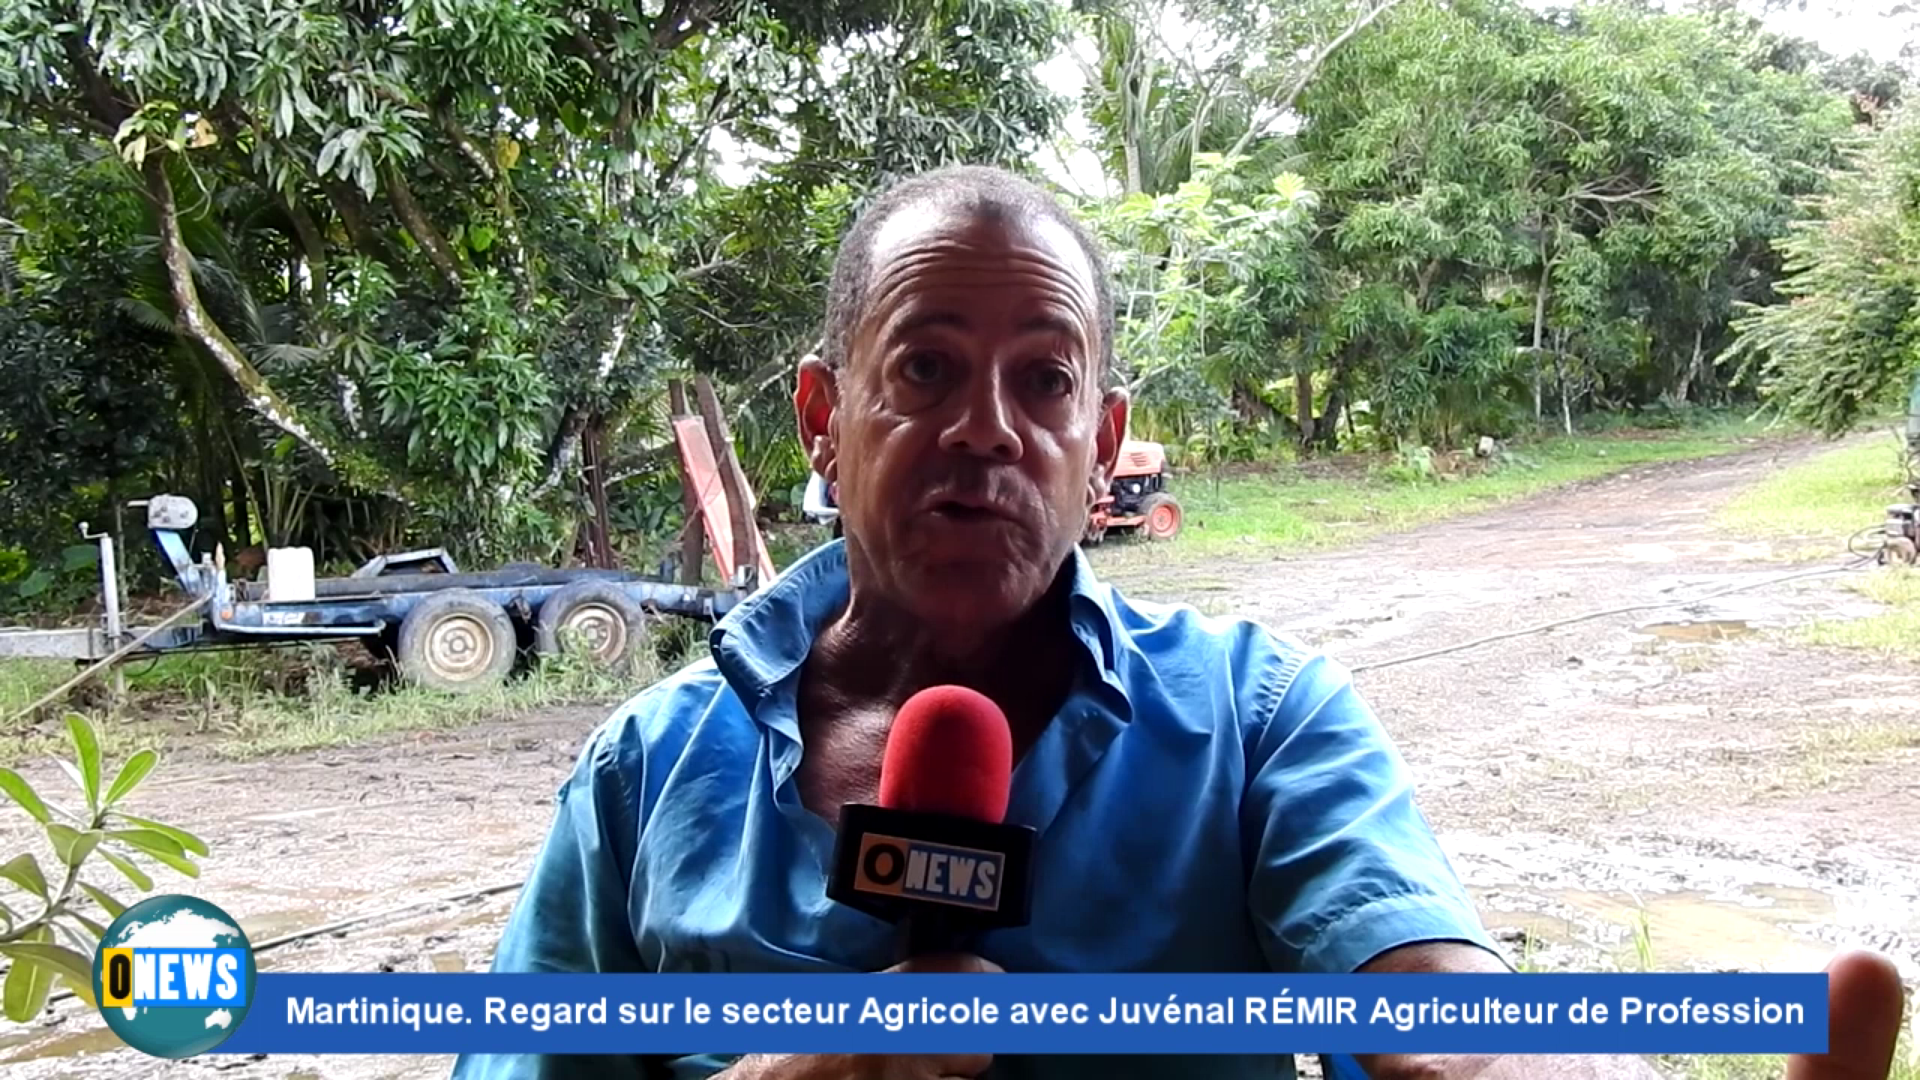 [Vidéo] Onews Martinique. Regard sur le secteur Agricole avec Juvénal RÉMIR Agriculteur.